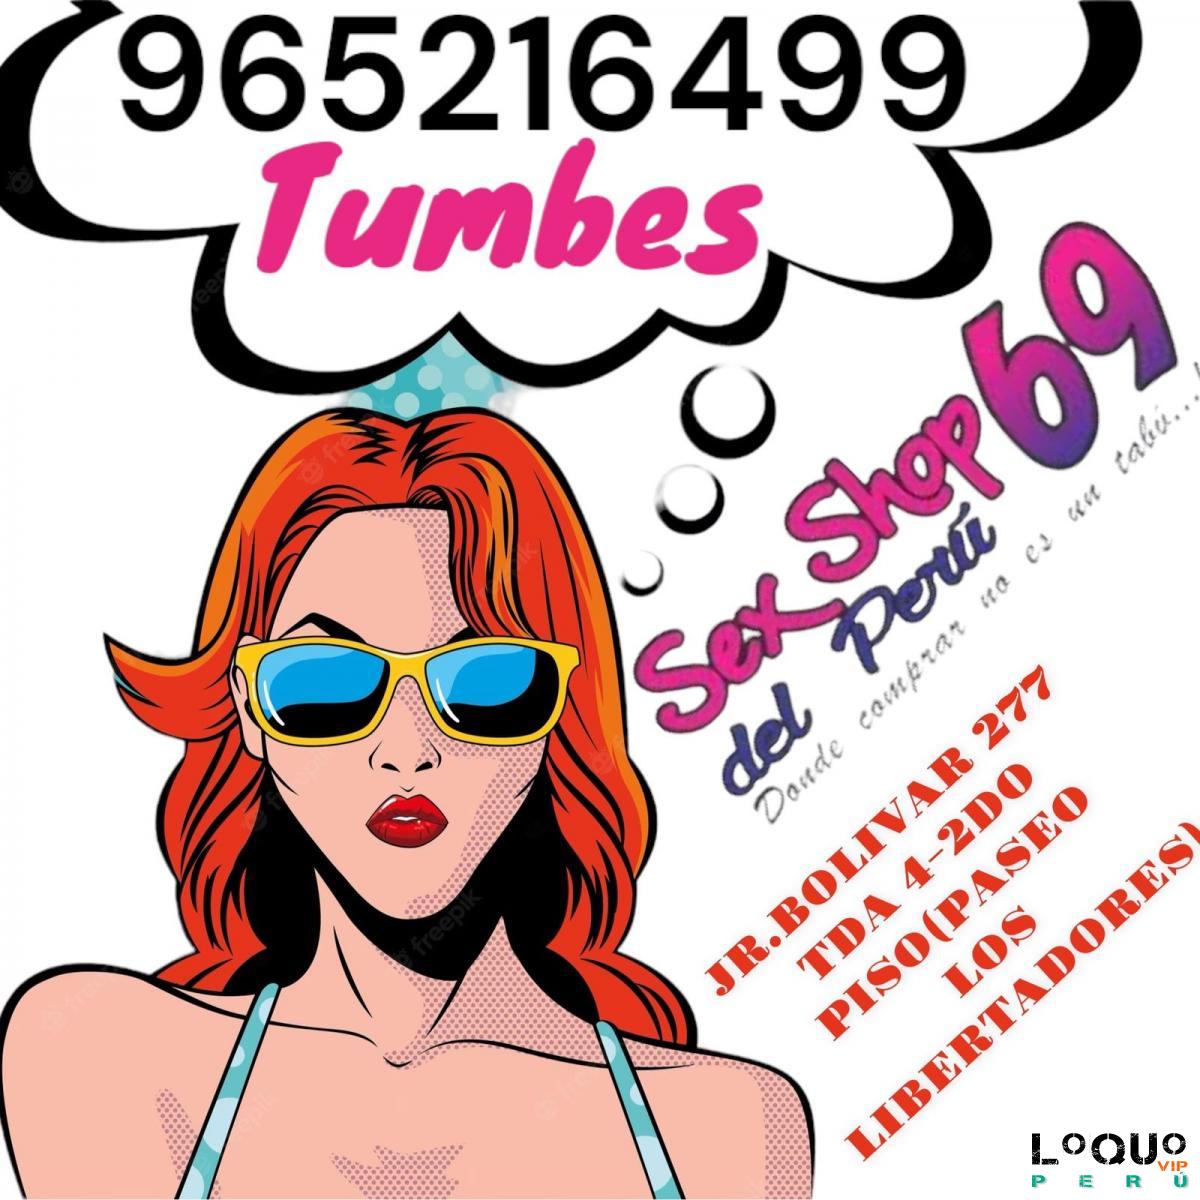 Sex Shop Arequipa: SEX OFERTAS EN TODOS LOS JUGUETES !!